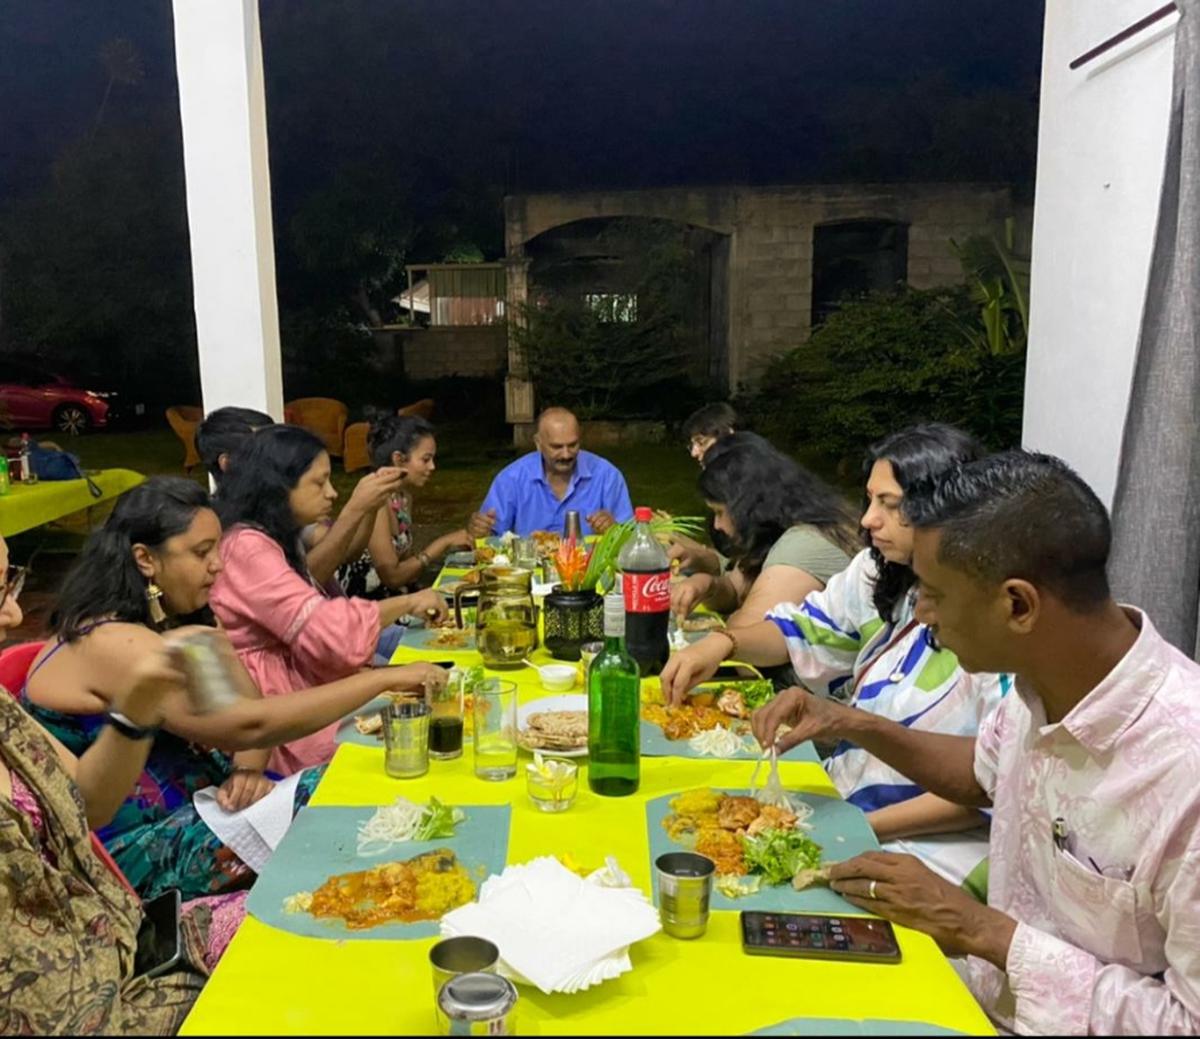 Dinner at the Bhujuns